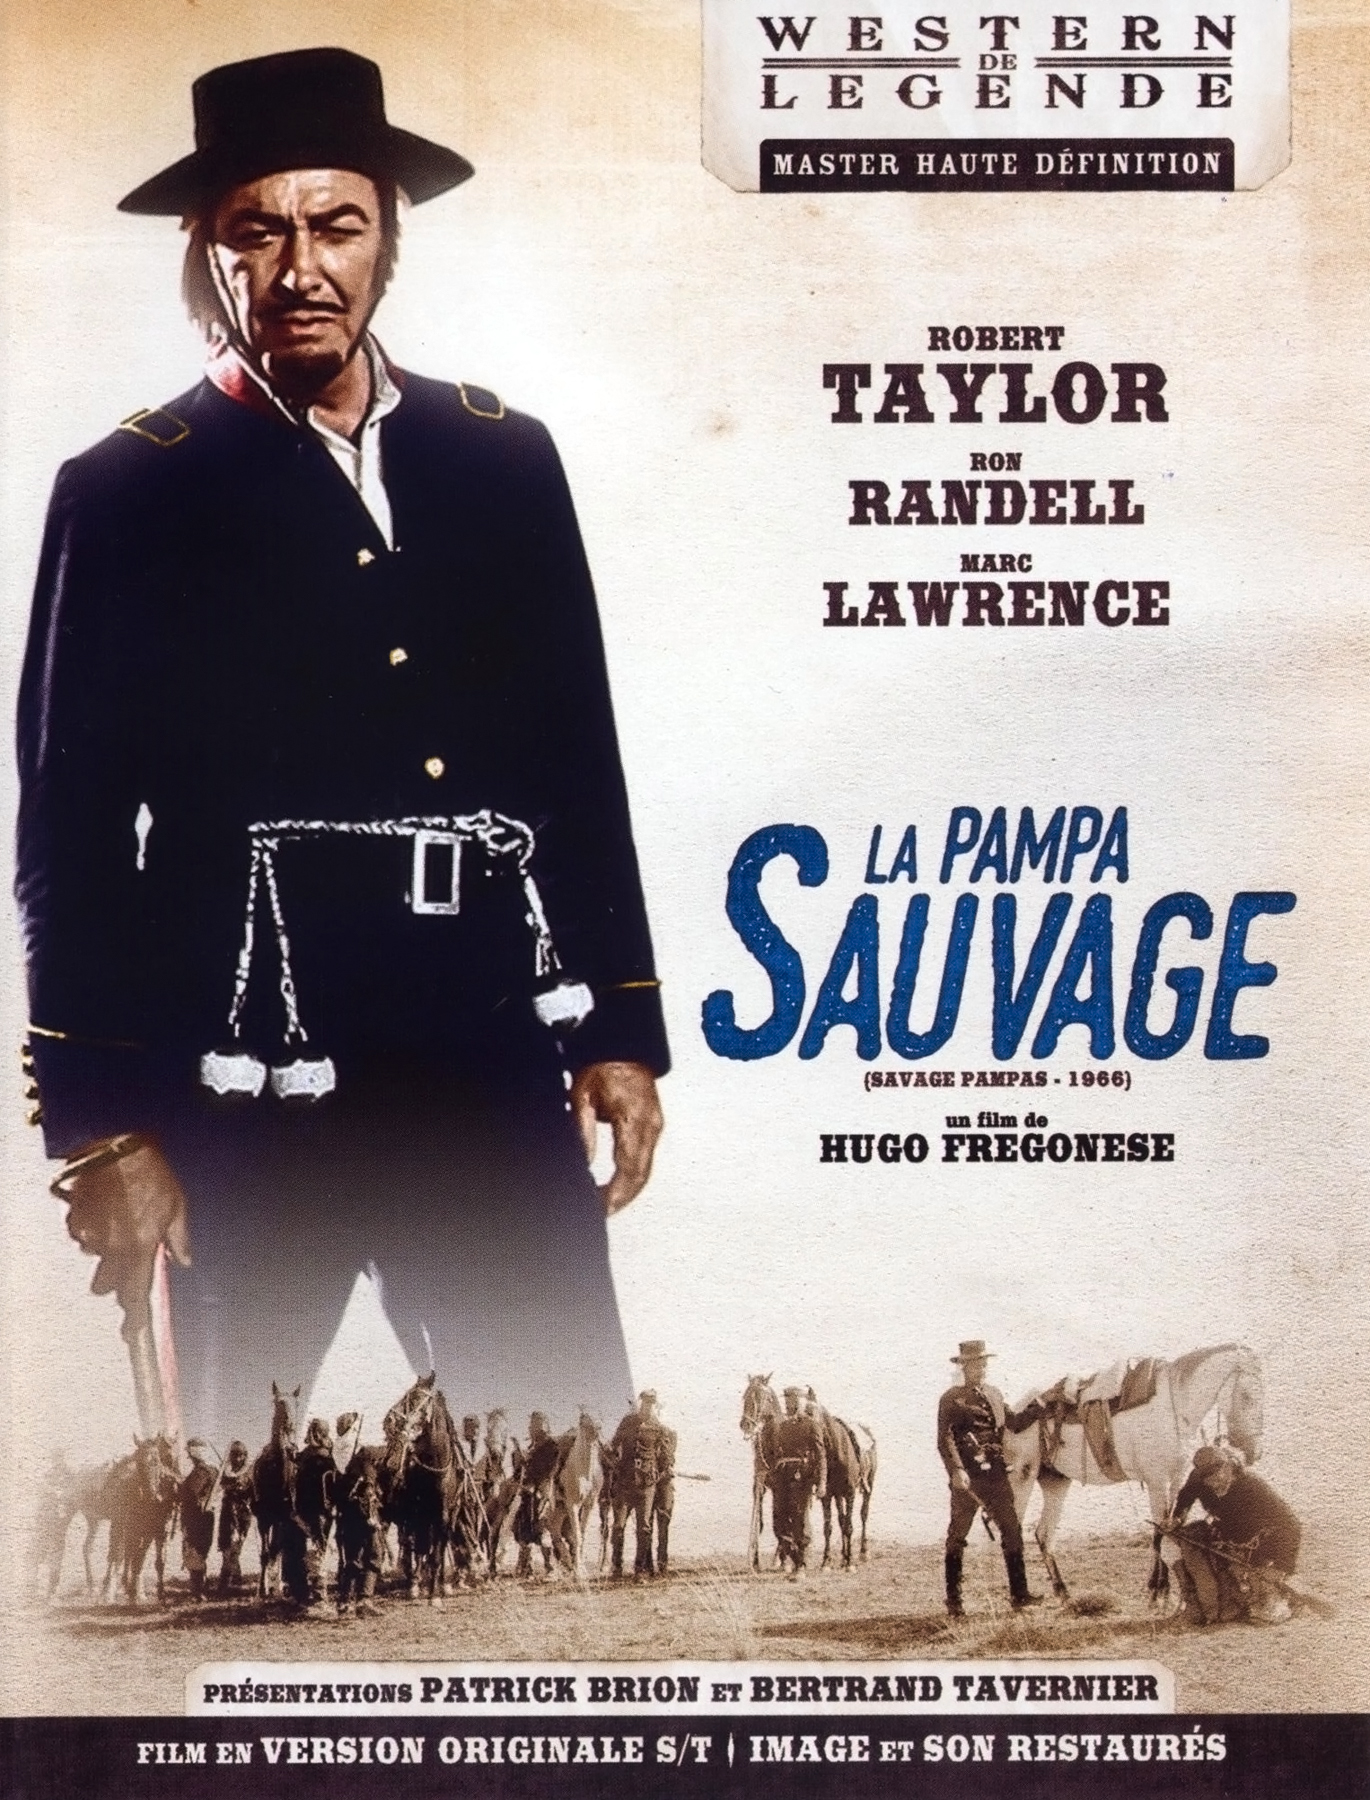 Savage Pampas (1965) Screenshot 5 